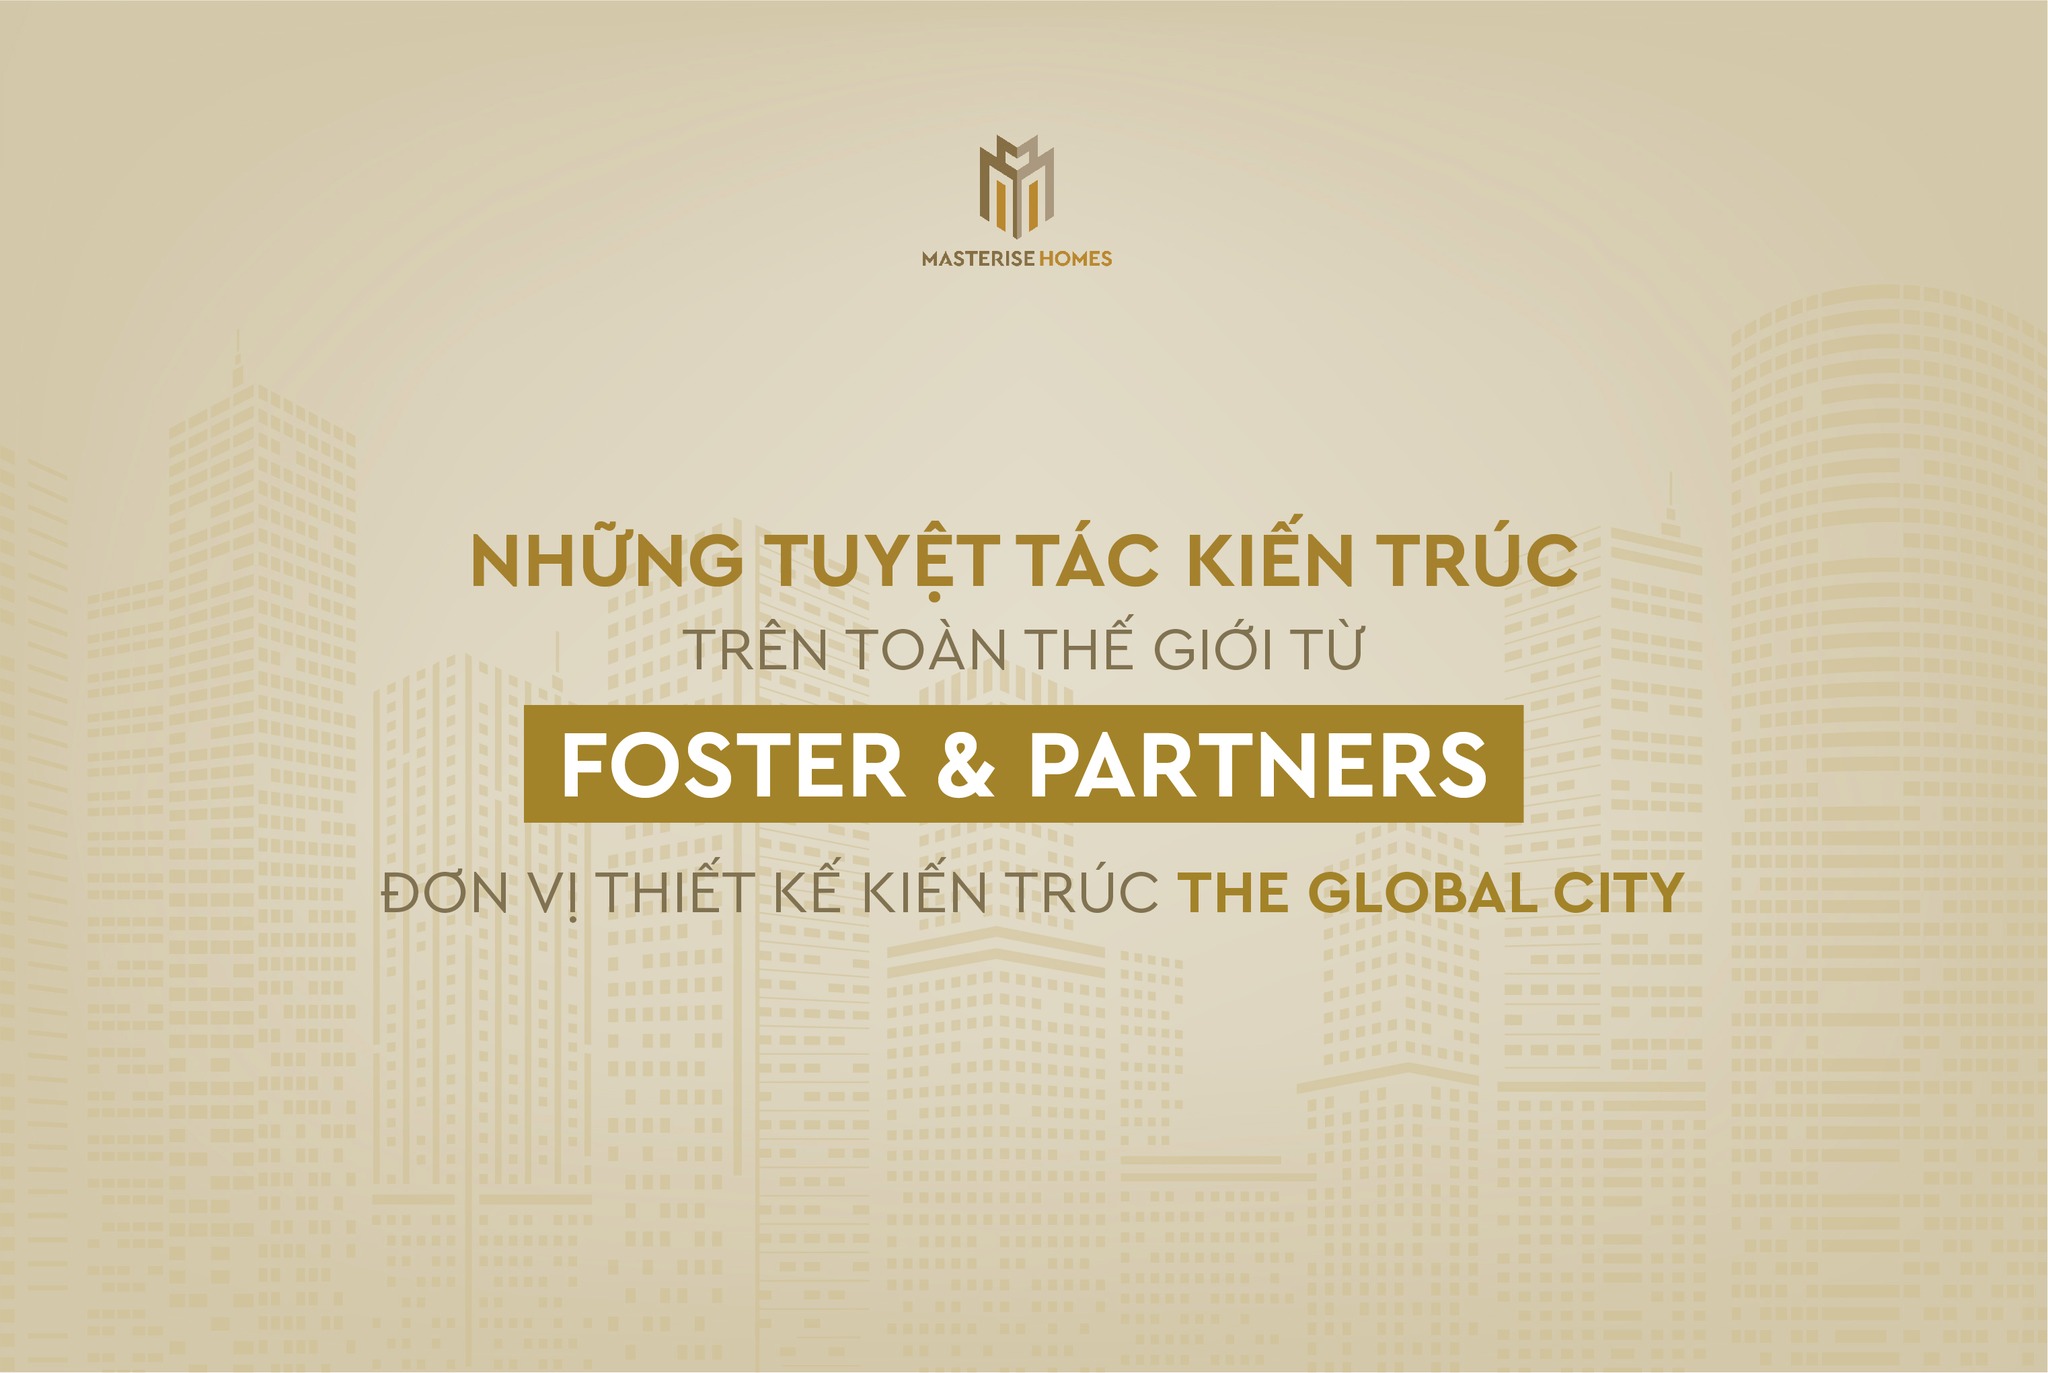 “Chọn mặt” Foster and Partners để “gửi vàng” The Global City, Masterise Homes tiên phong kiến tạo một “Downtown city” mang tính biểu tượng của toàn khu vực Đông Nam Á.